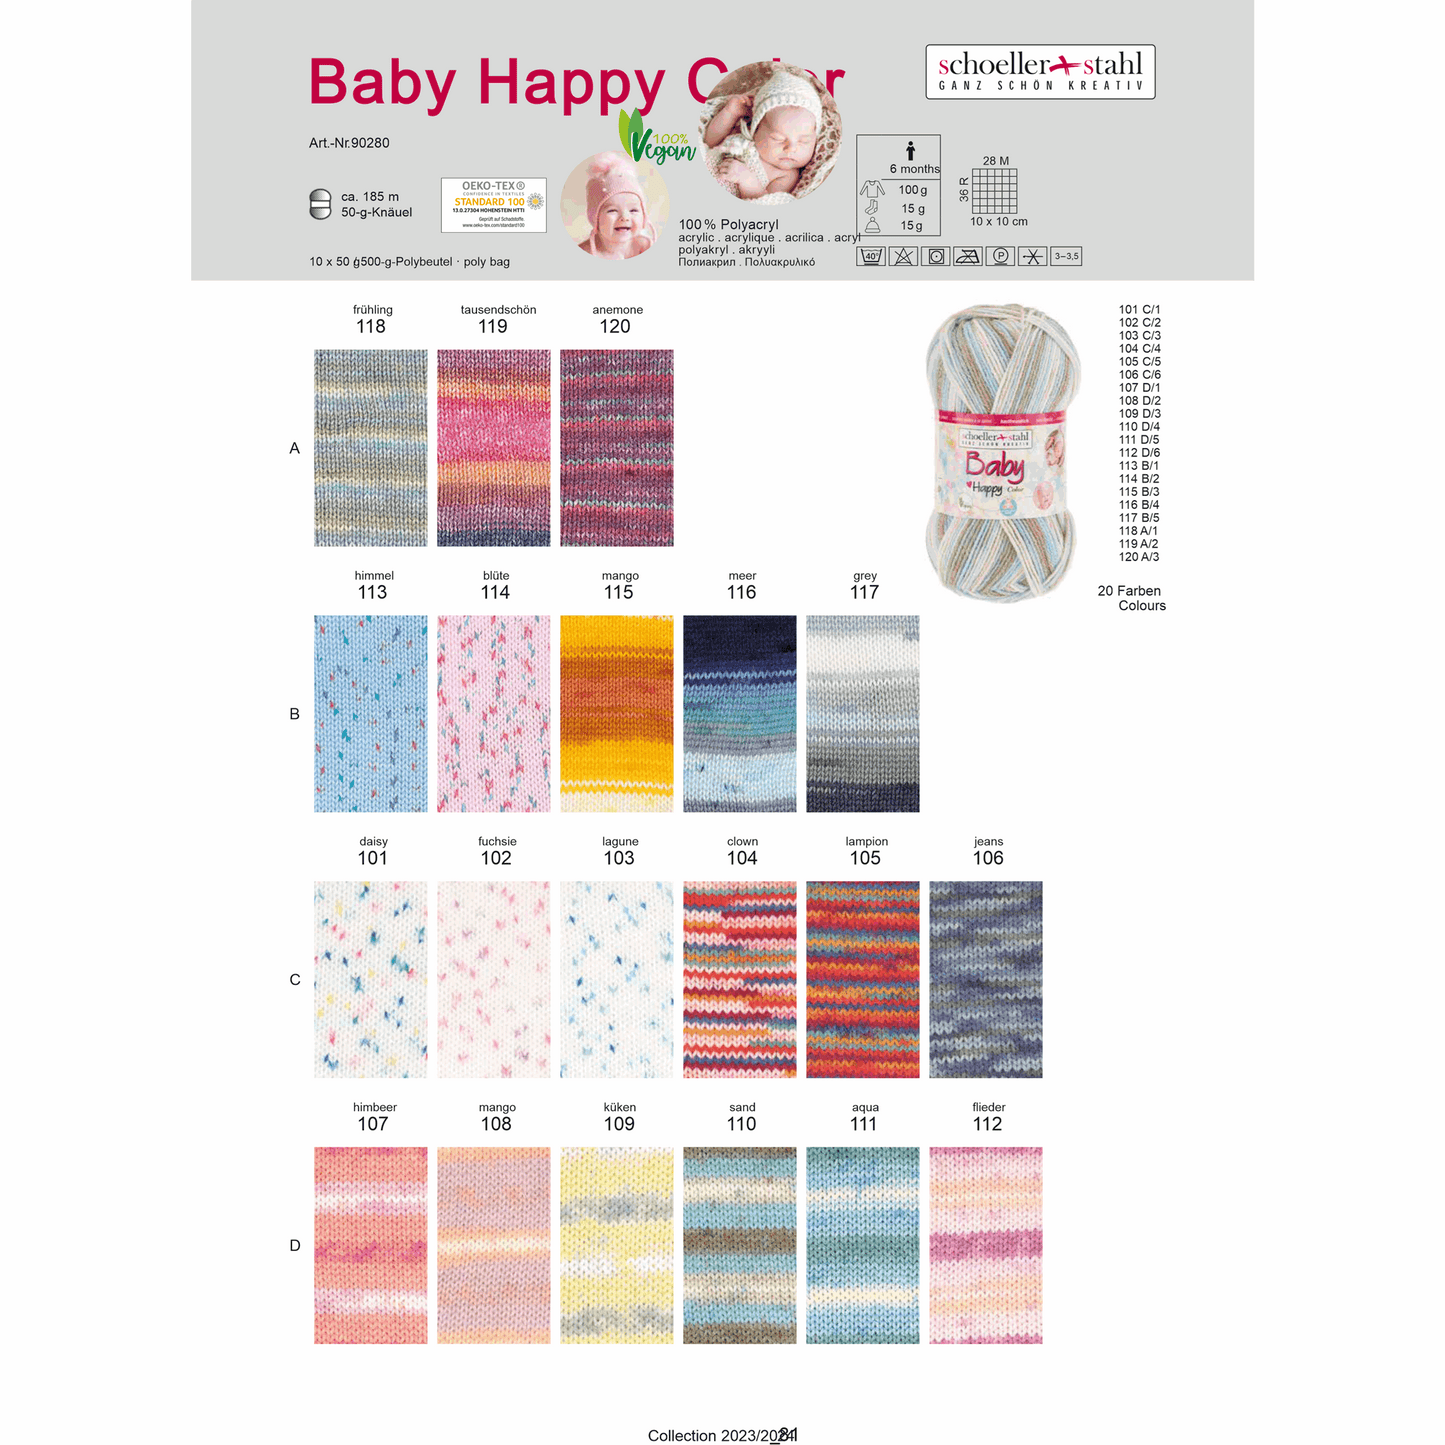 Baby happy color 50g, 90280, Farbe 115, mango